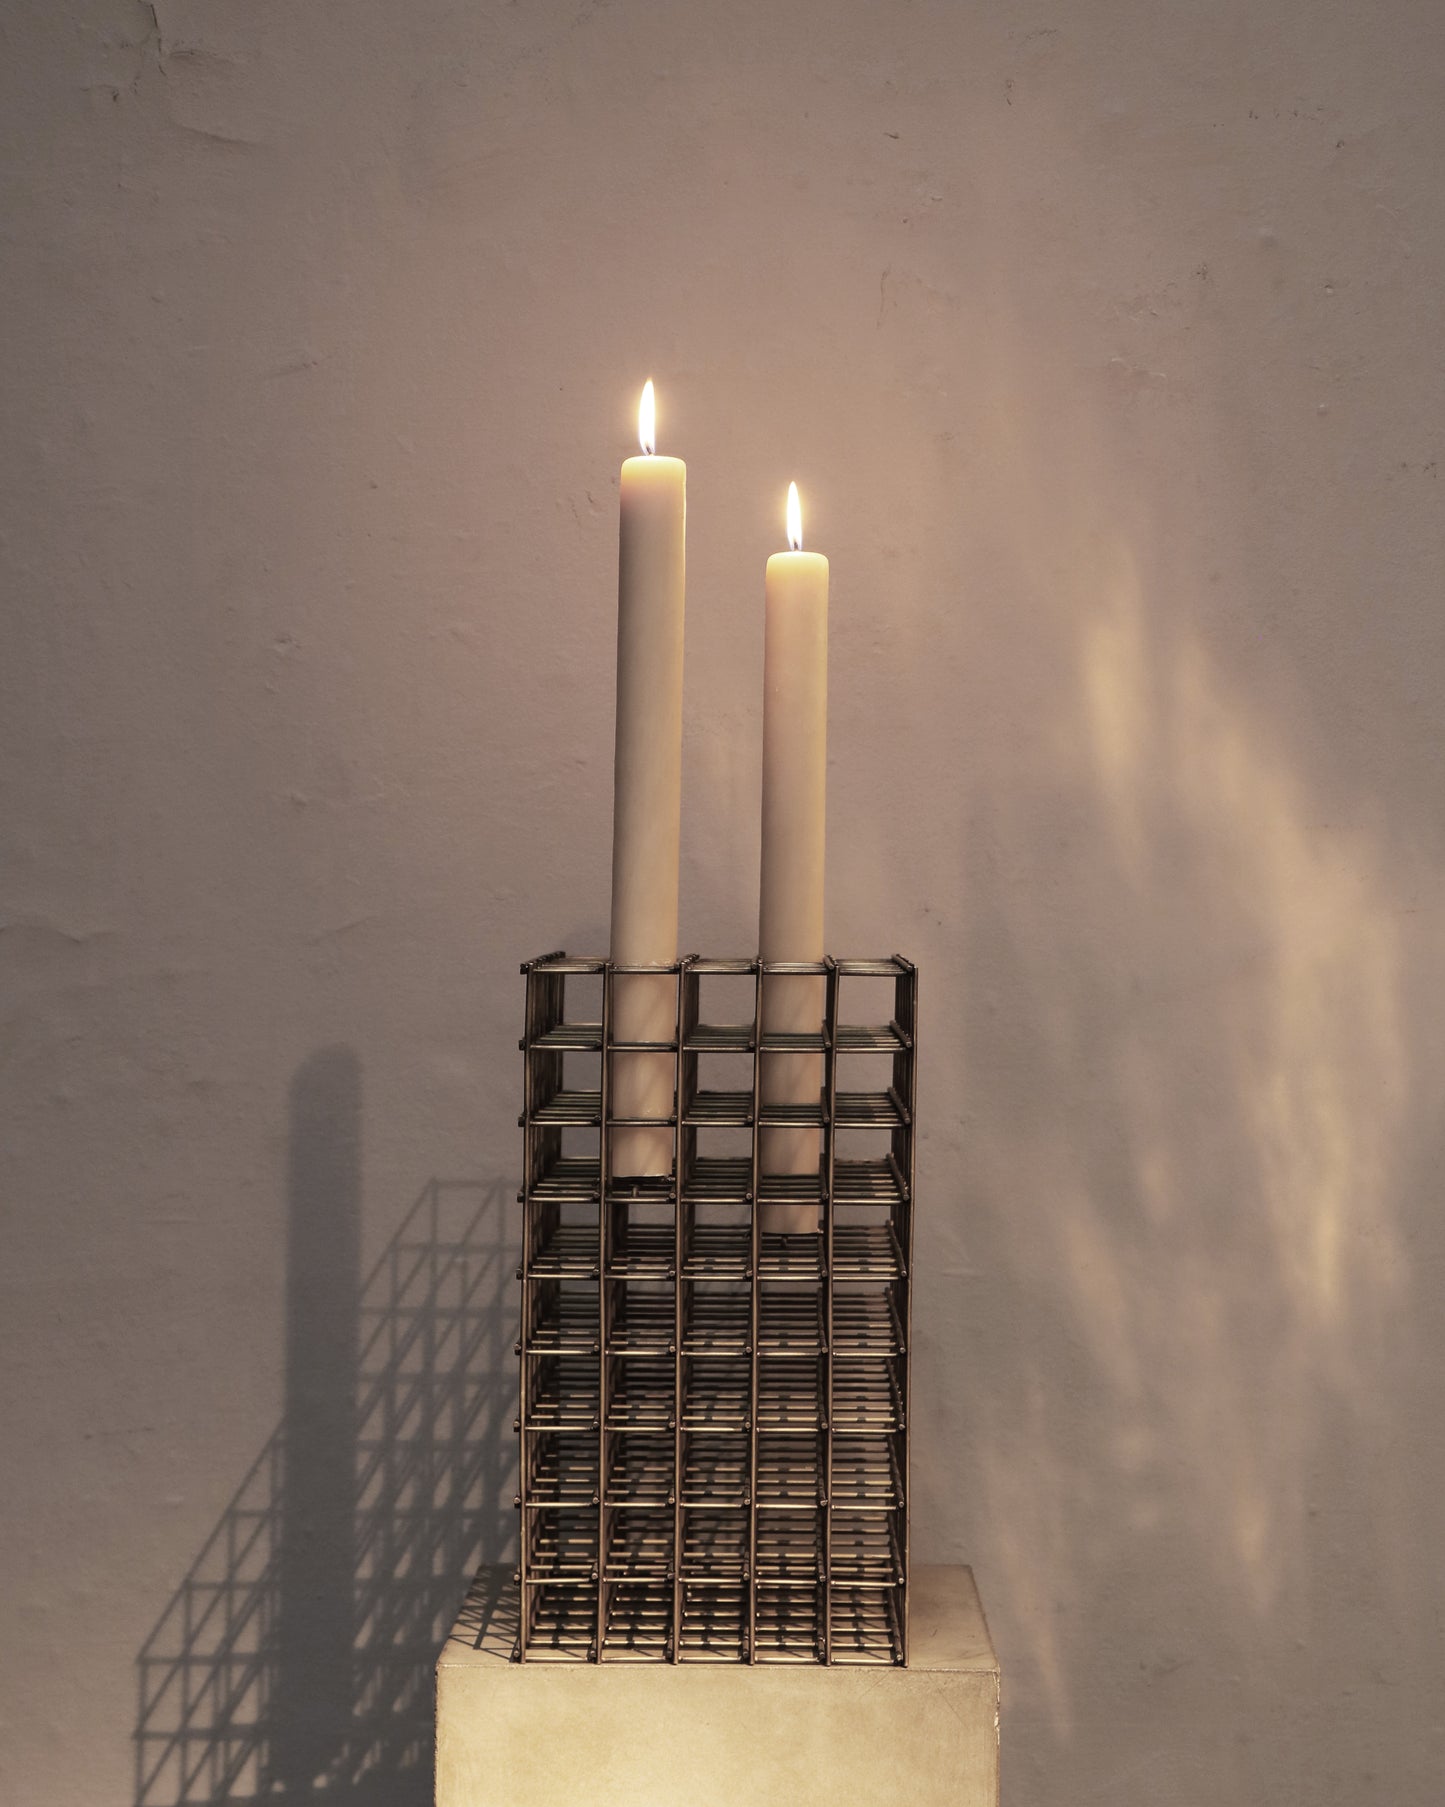 Candle Grid I by Héctor Esrawe